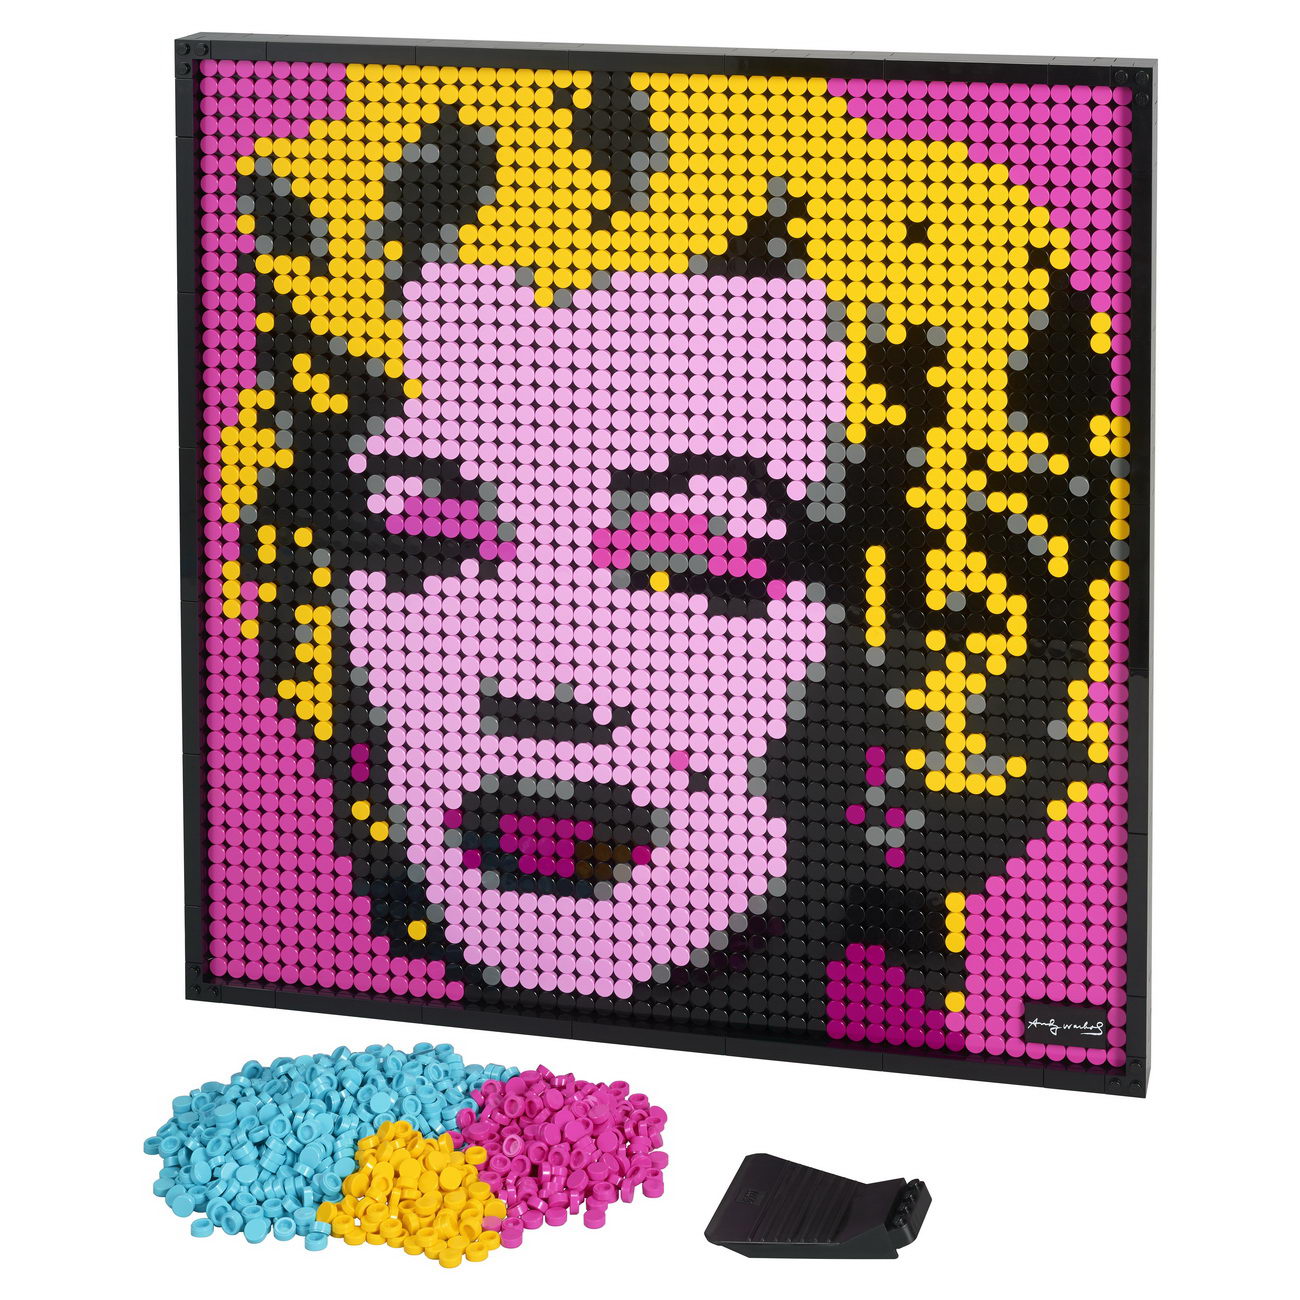 LEGO Art 31197 - Marilyn Monroe (Andy Warhol)